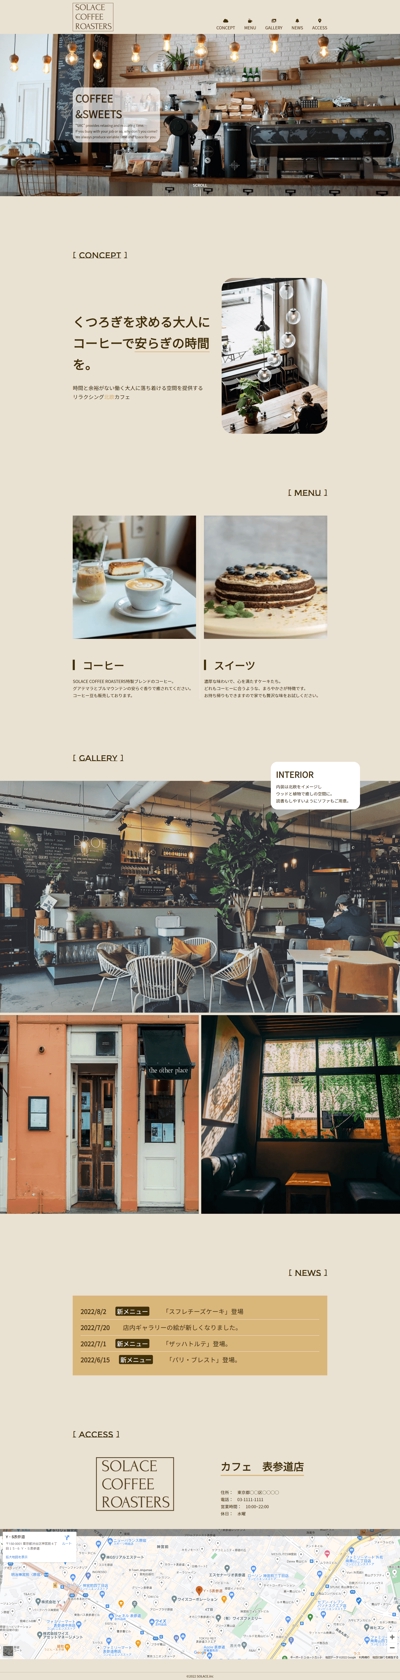 「架空のカフェ:SOLACE COFFEE ROASTERSのホームページ」